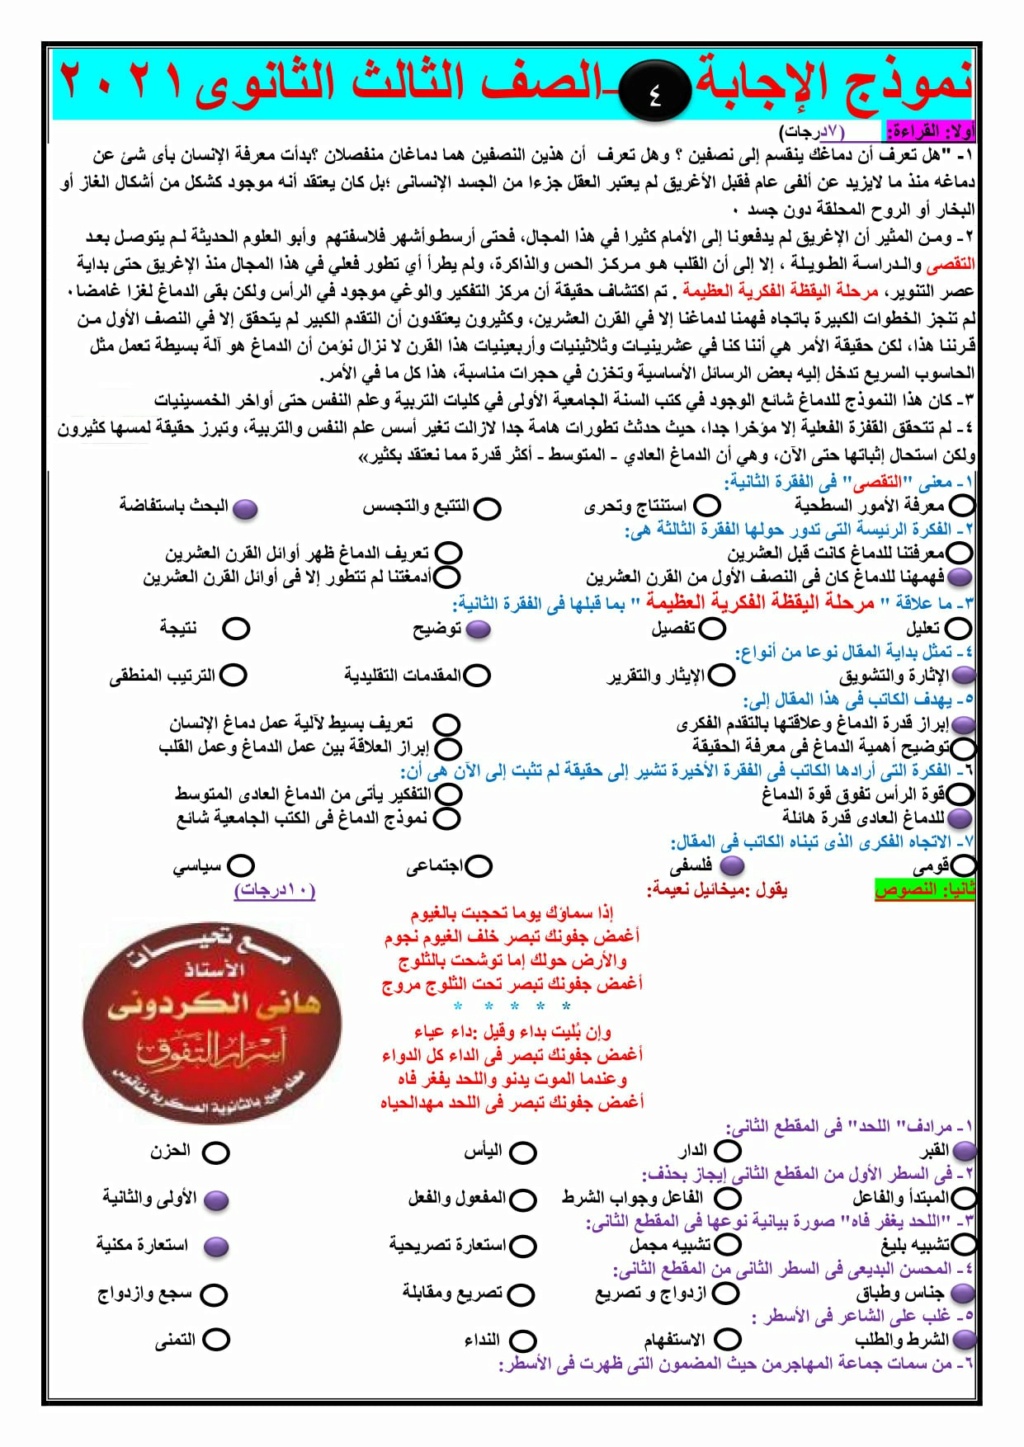 امتحان للصف الثالث الثانوى 2021" لغة عربية" أفكار جديدة تتماشى مع أنماط هذا العام +نموذج الإجابة 20010410